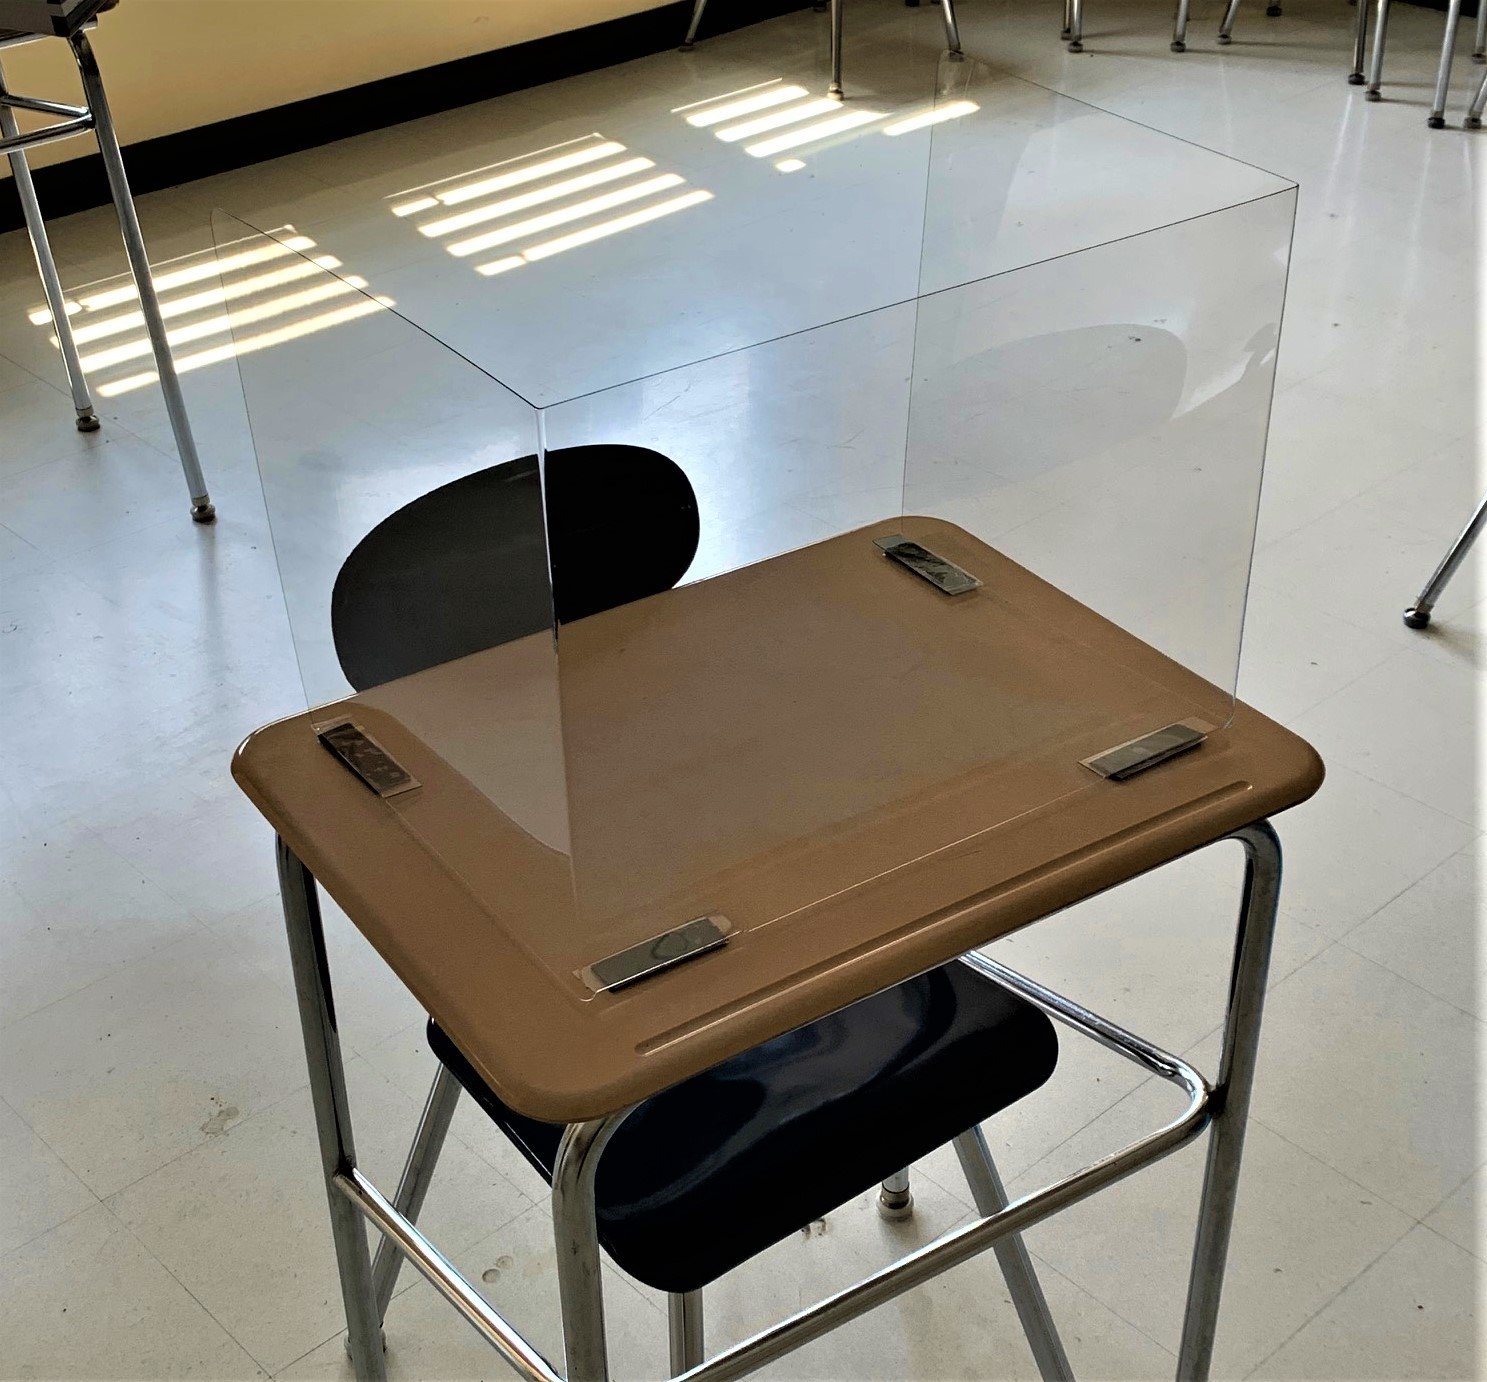 (Tấm chắn cho máy tính để bàn dành cho sinh viên - .040 PETG - NY) Tấm chắn cho máy tính để bàn dành cho sinh viên - PETG bán cứng